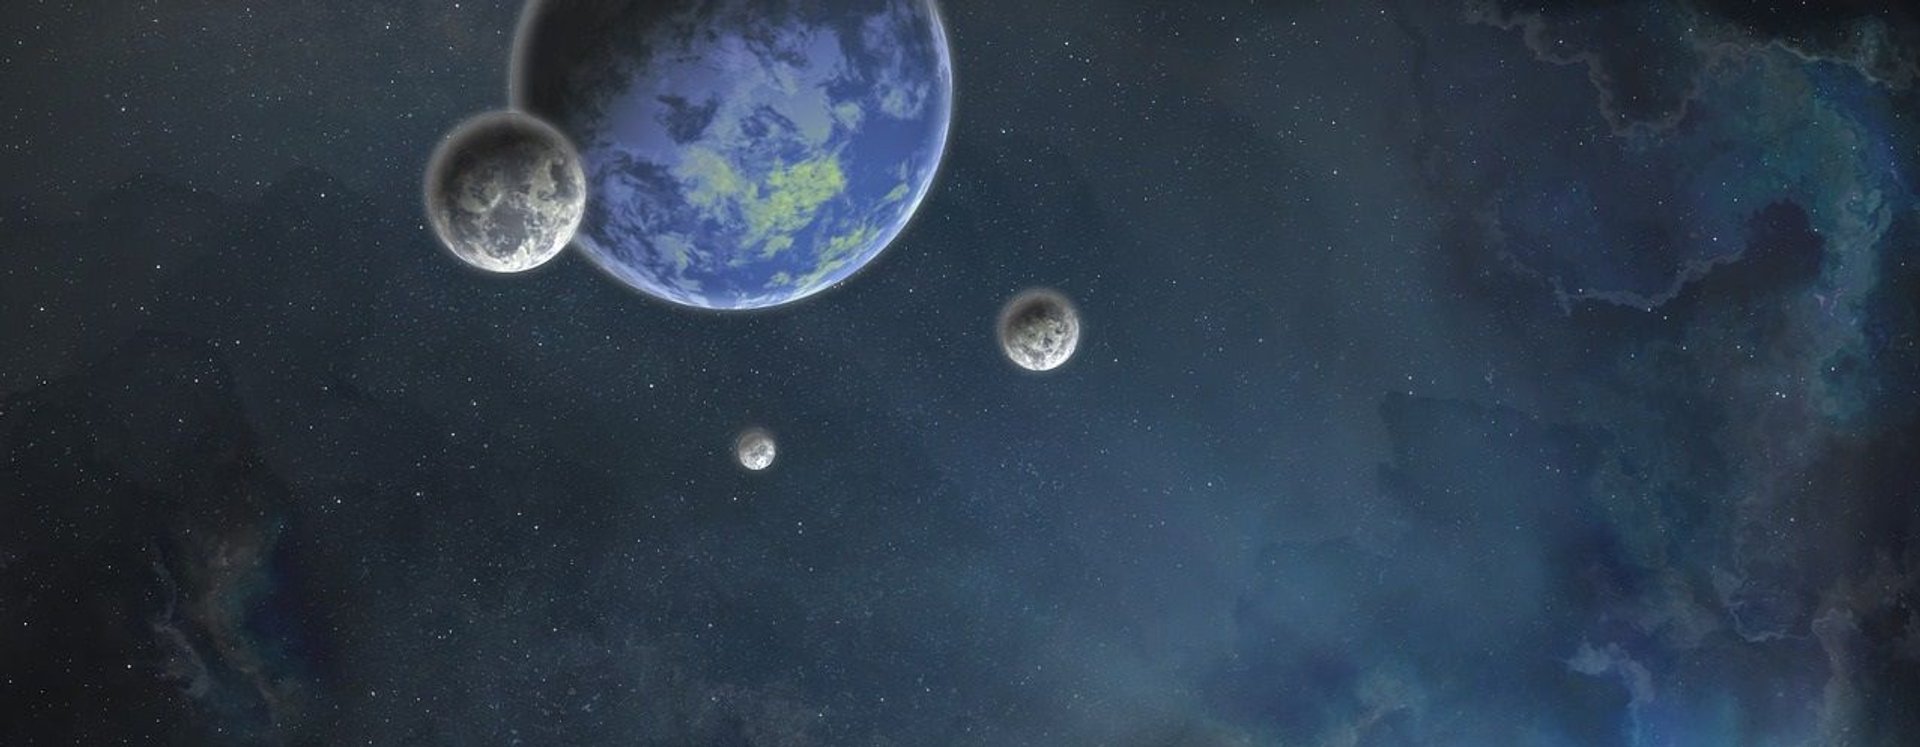 Egzoplaneta otoczona przez trzy księżyce.